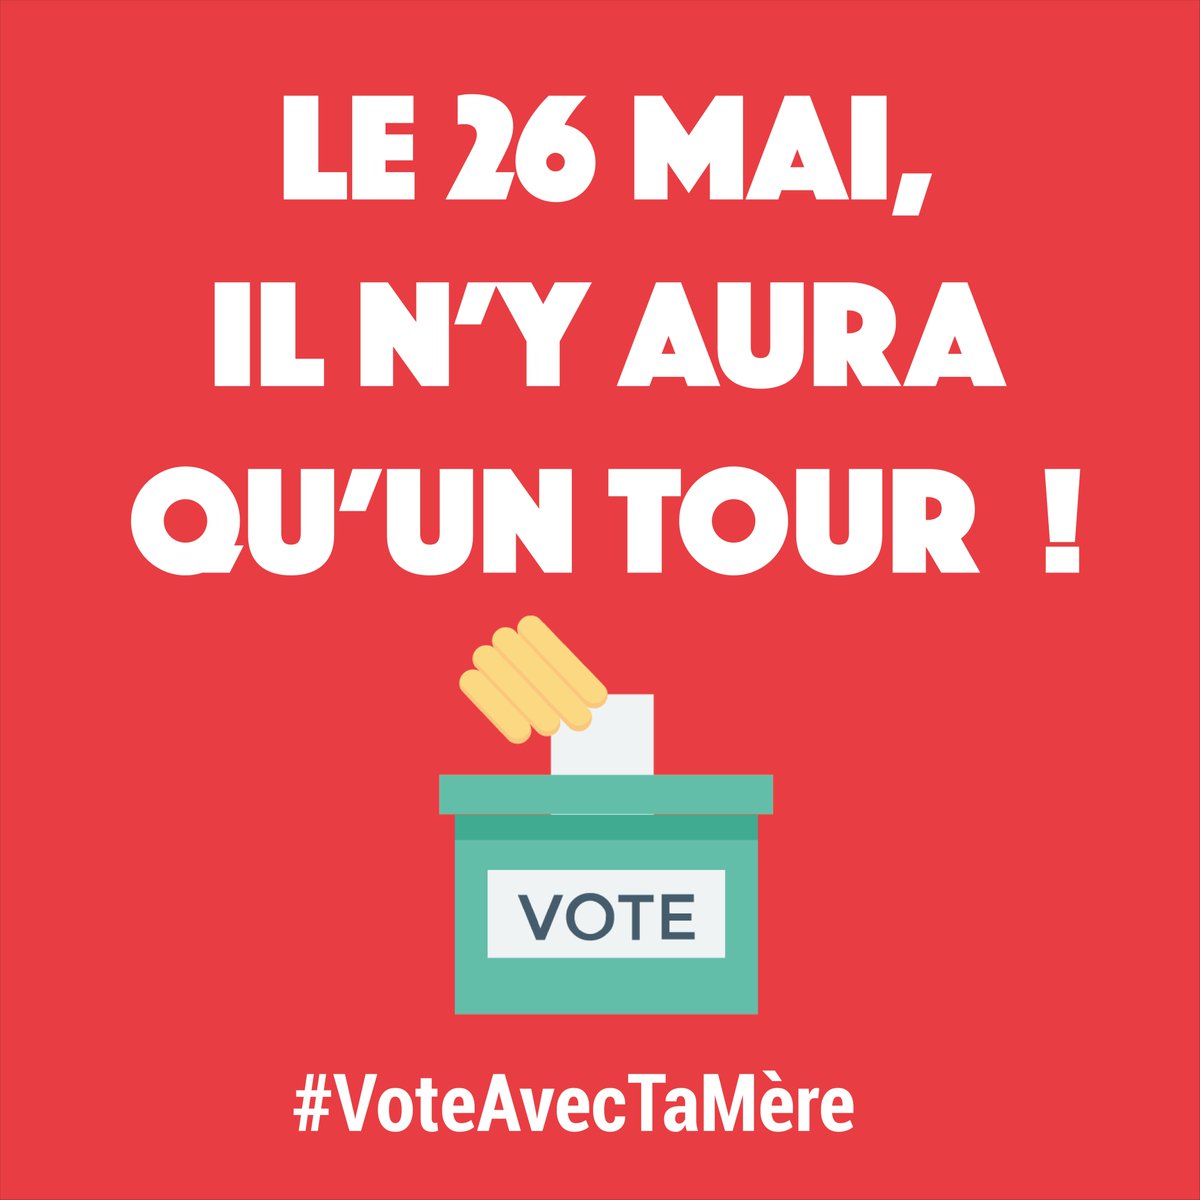 🚨 Vous connaissez l'#EuropeChallenge ? À J-4 des élections européenne je mobilise 5 de mes proches pour les inciter à aller voter !

🇪🇺 Le 26 mai, il n'y aura qu'un seul tour ! 🗳

#VoteAvecTaMère #CetteFoisJeVote #EUelections2019